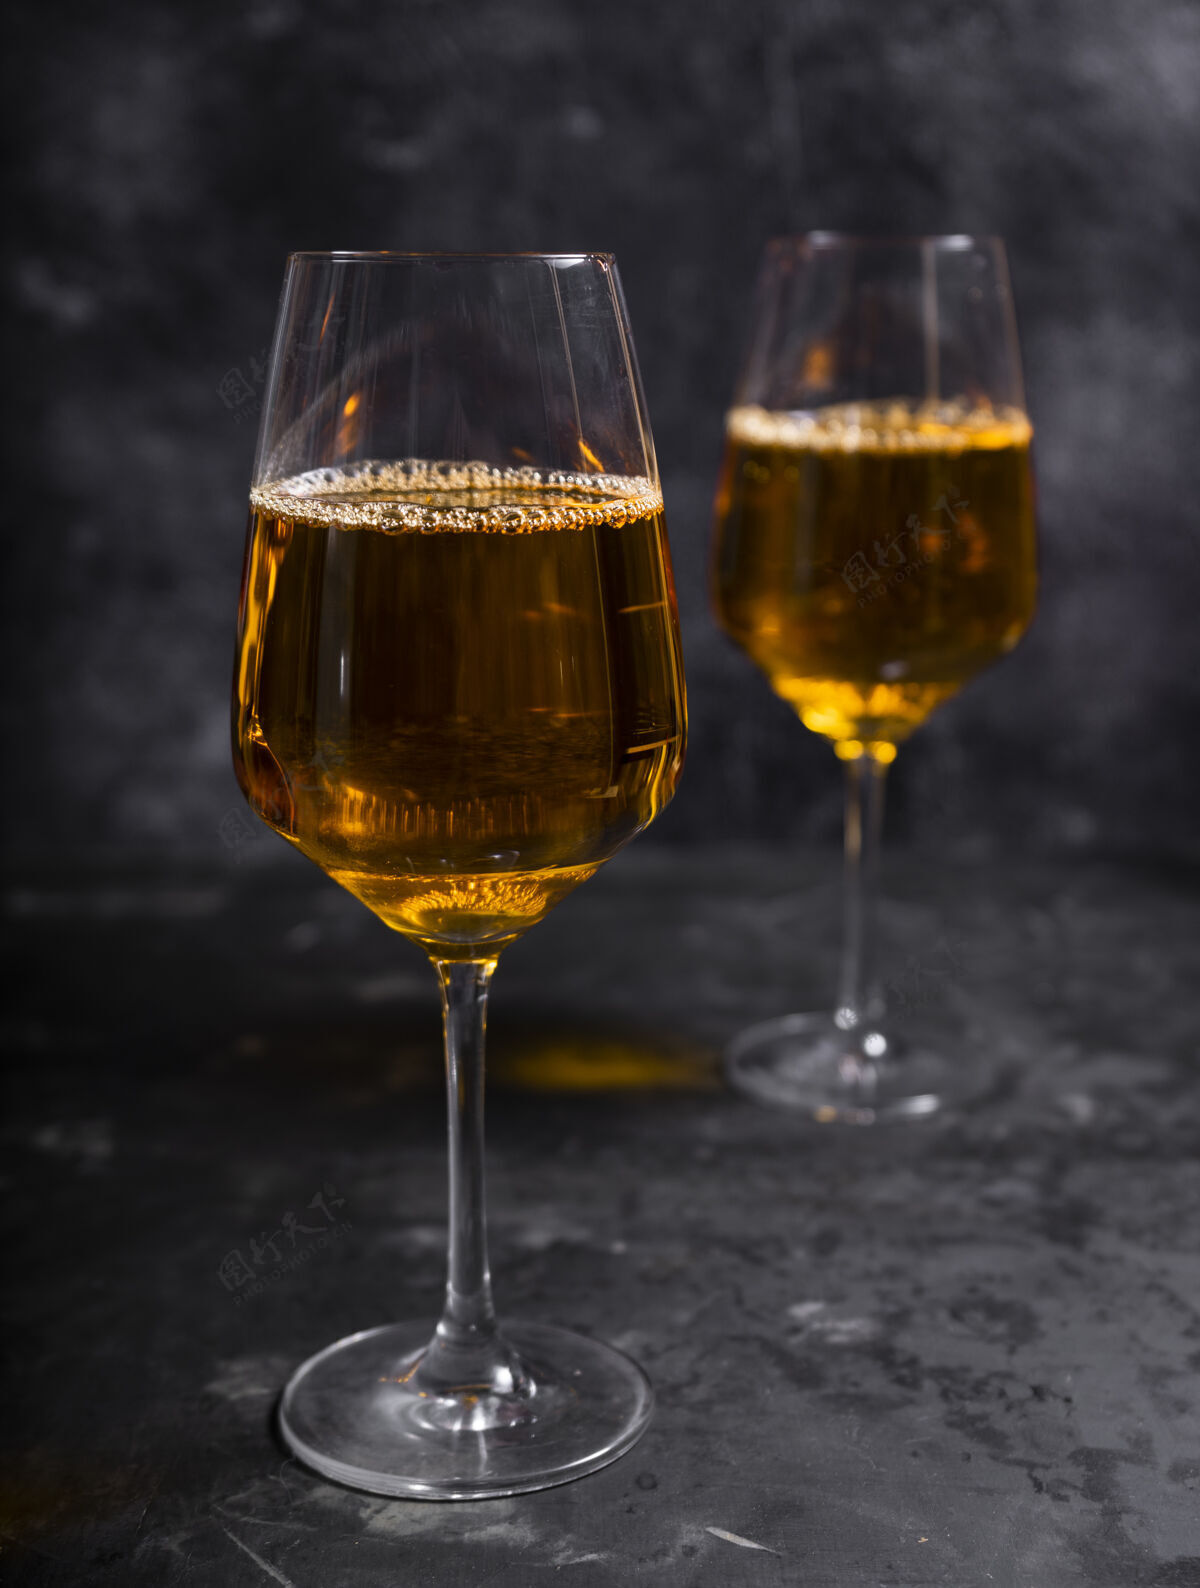 液体用白葡萄酒酿造的琥珀色或橙色葡萄酒葡萄.in烈酒格拉斯格鲁吉亚语老工艺国酒酒庄葡萄传统